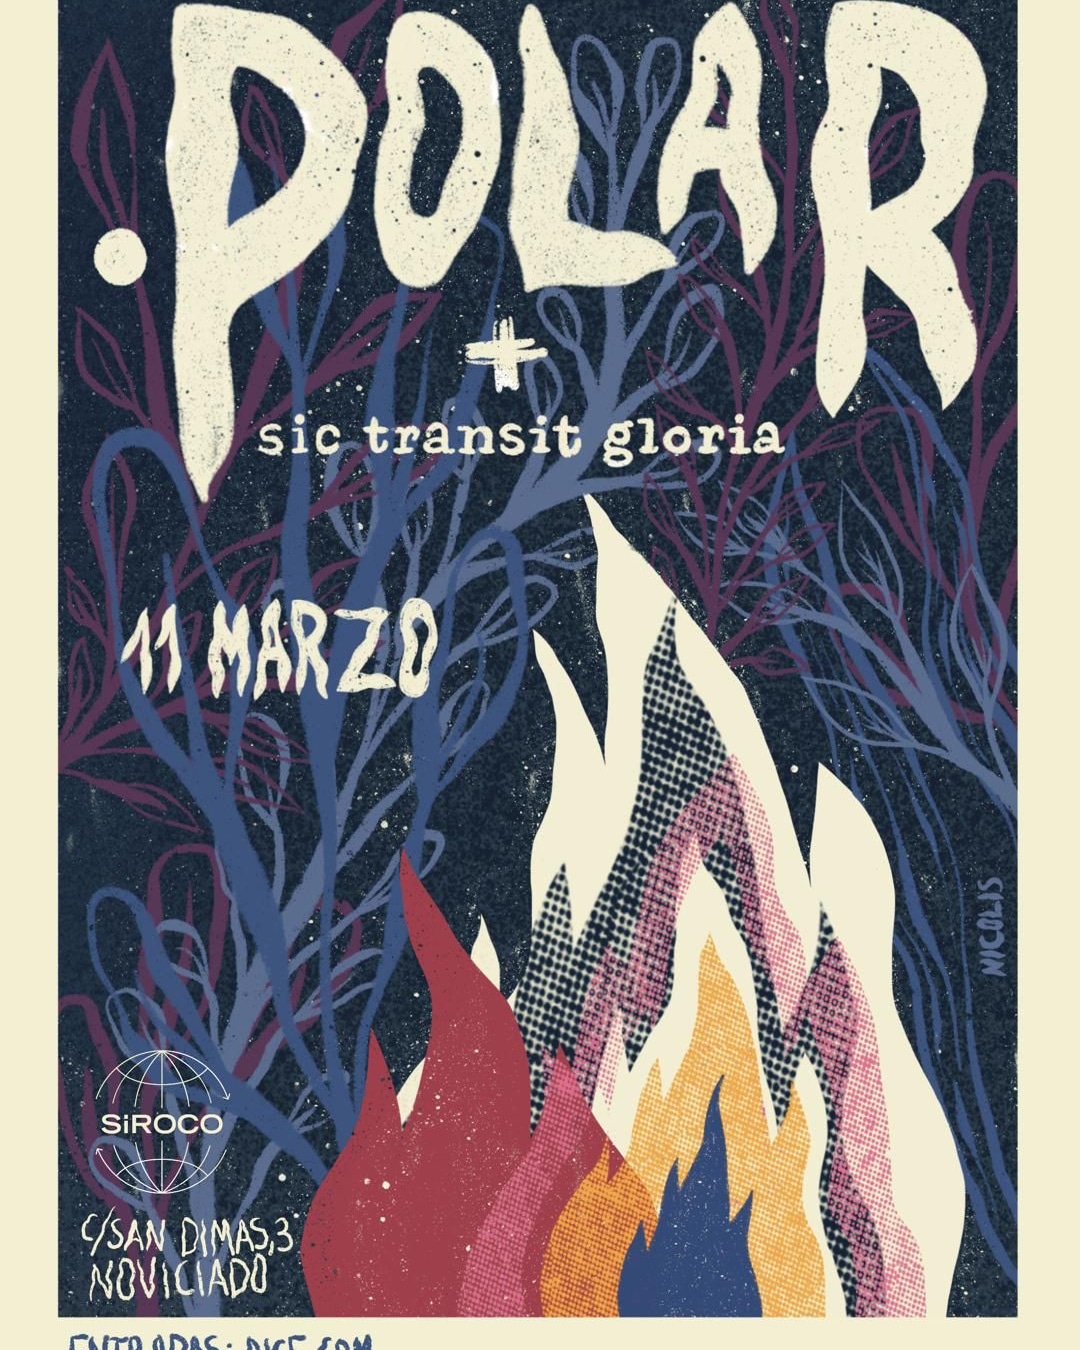 concierto de .polar y Sic Transit Gloria el 11 de marzo